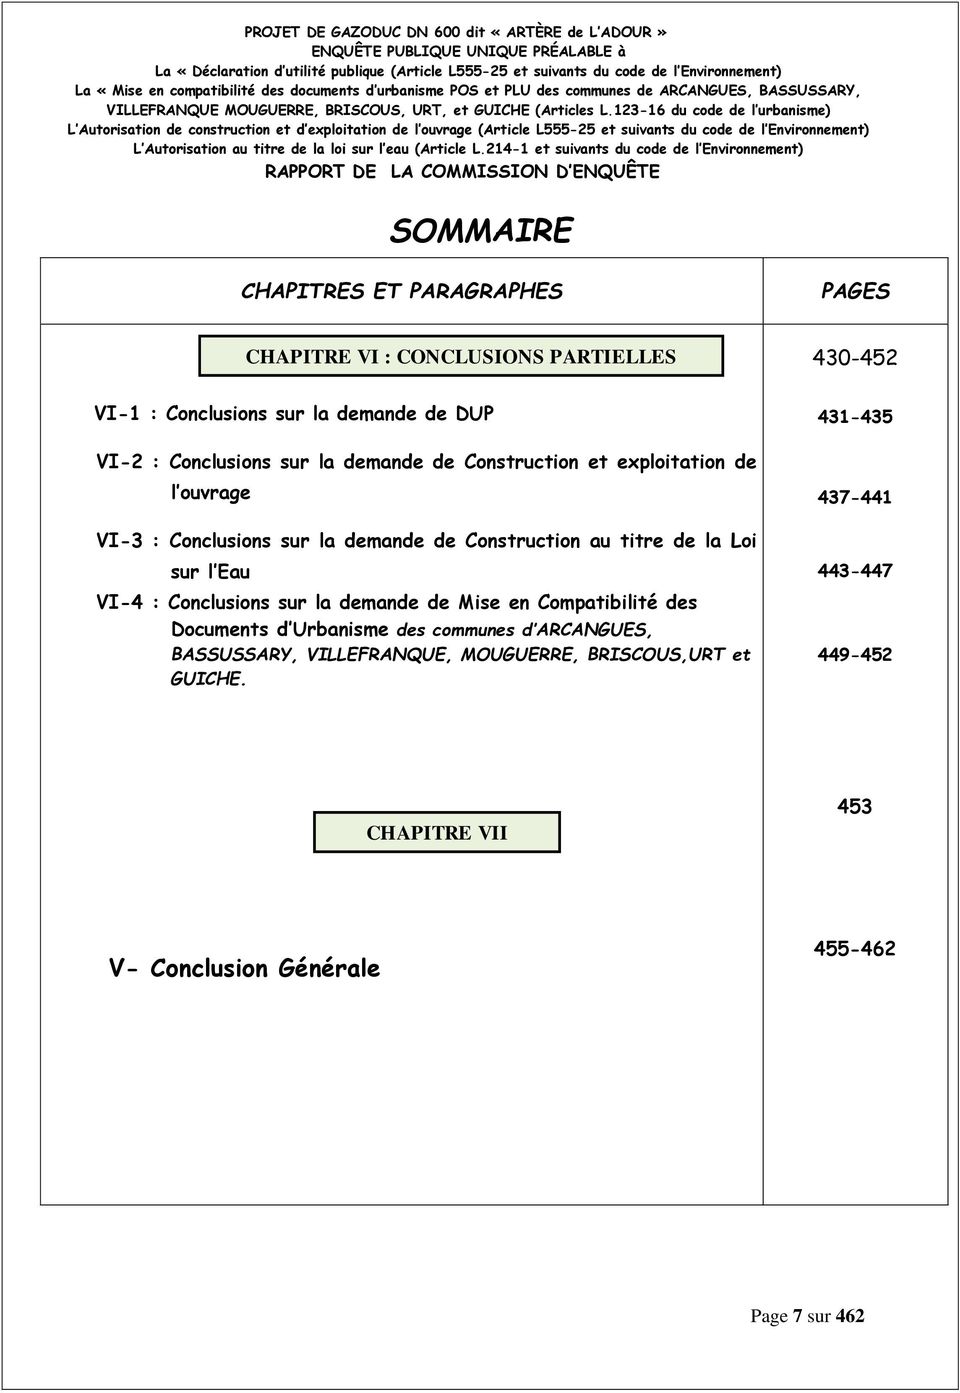 PARTIELLES VI-4 : Conclusions sur la demande de Mise en Compatibilité des Documents d Urbanisme des communes d ARCANGUES, BASSUSSARY,